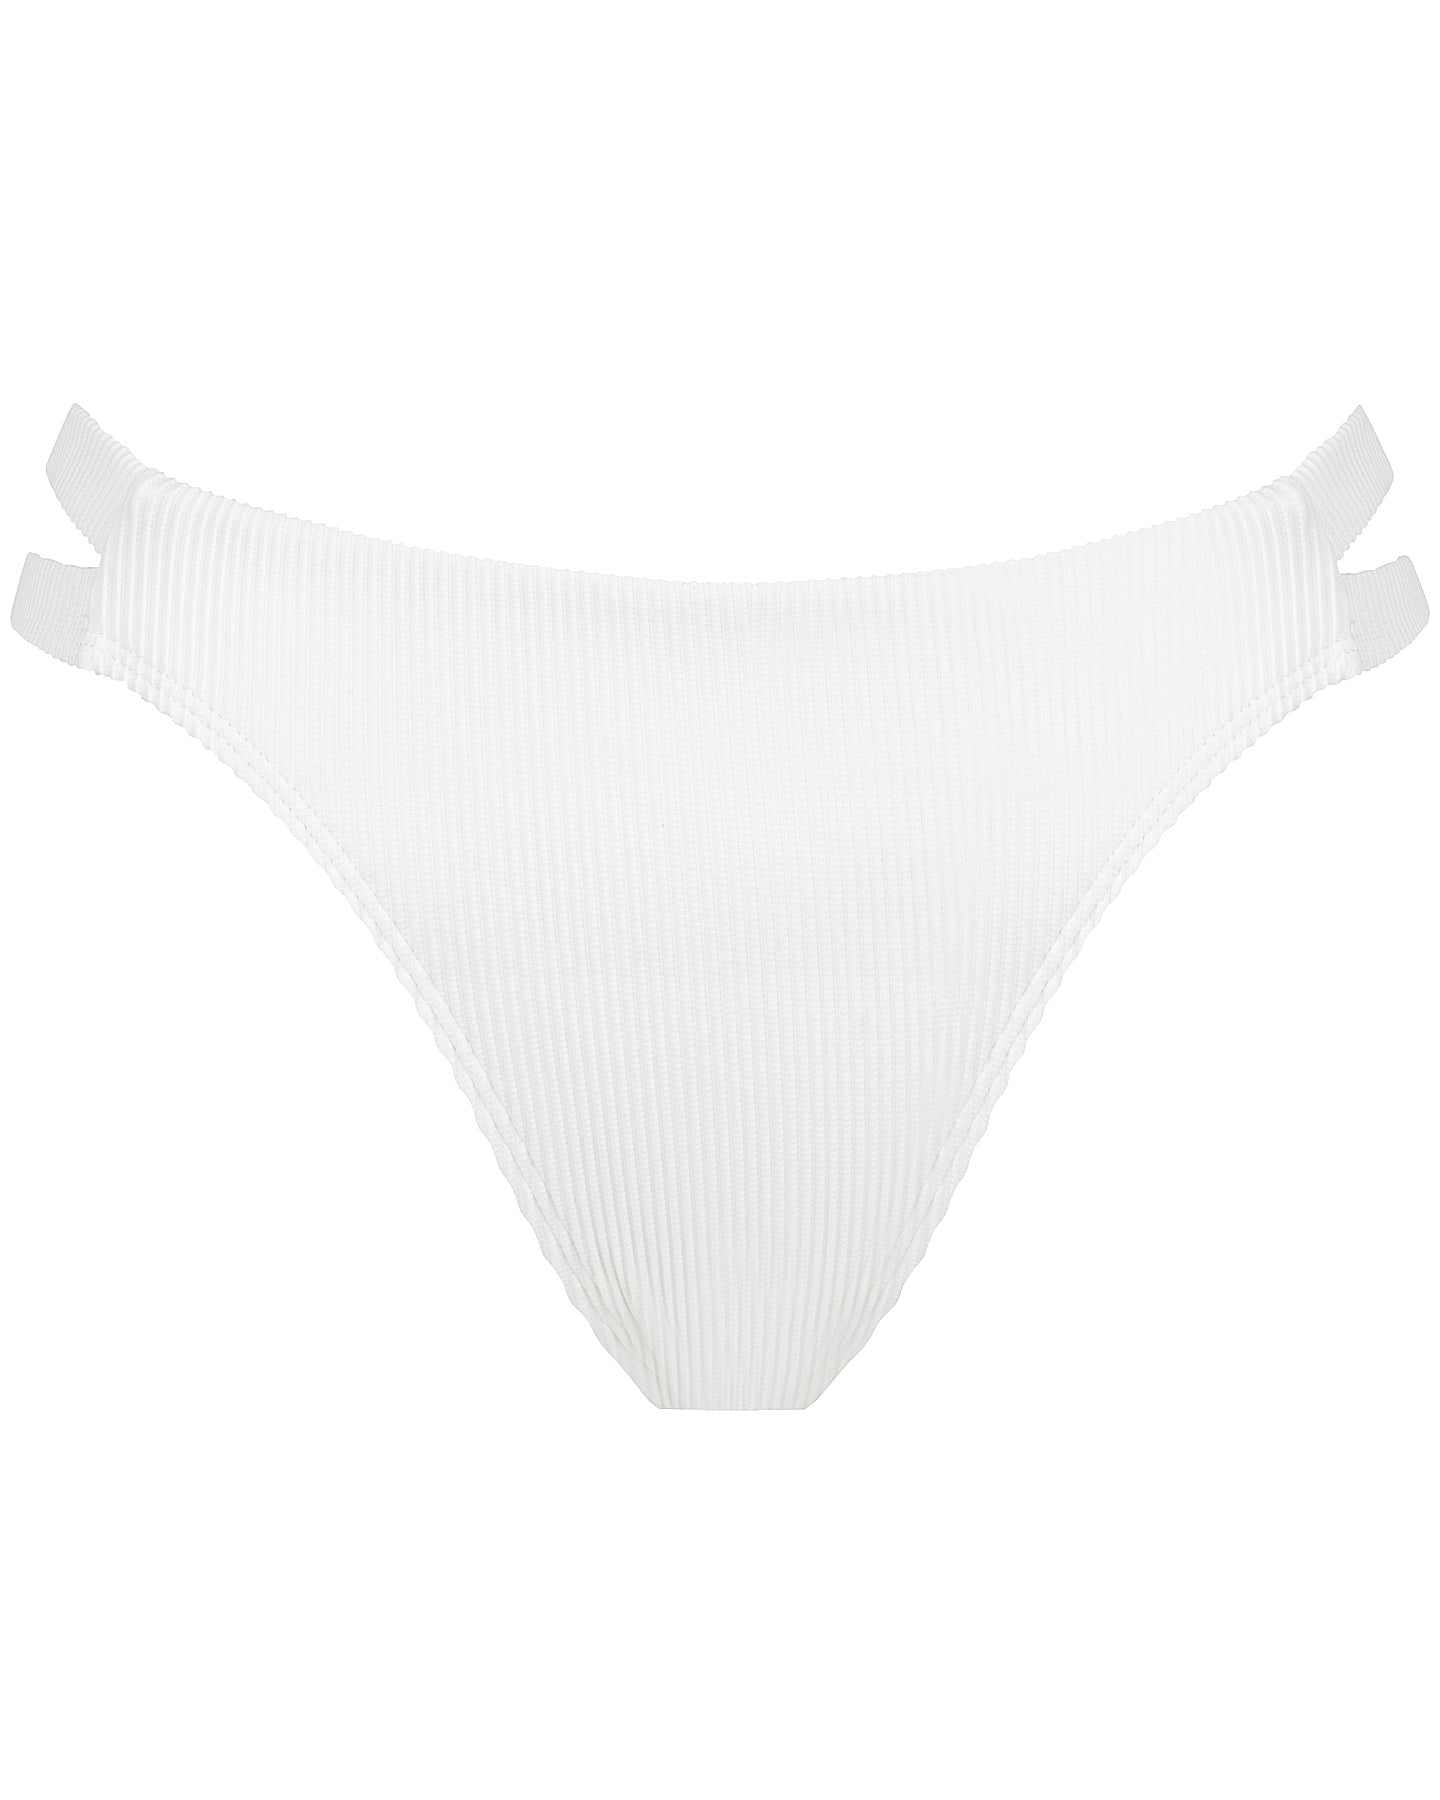 <b>Sicily</b><br>White Pina Colada Bikini Bottom<br>